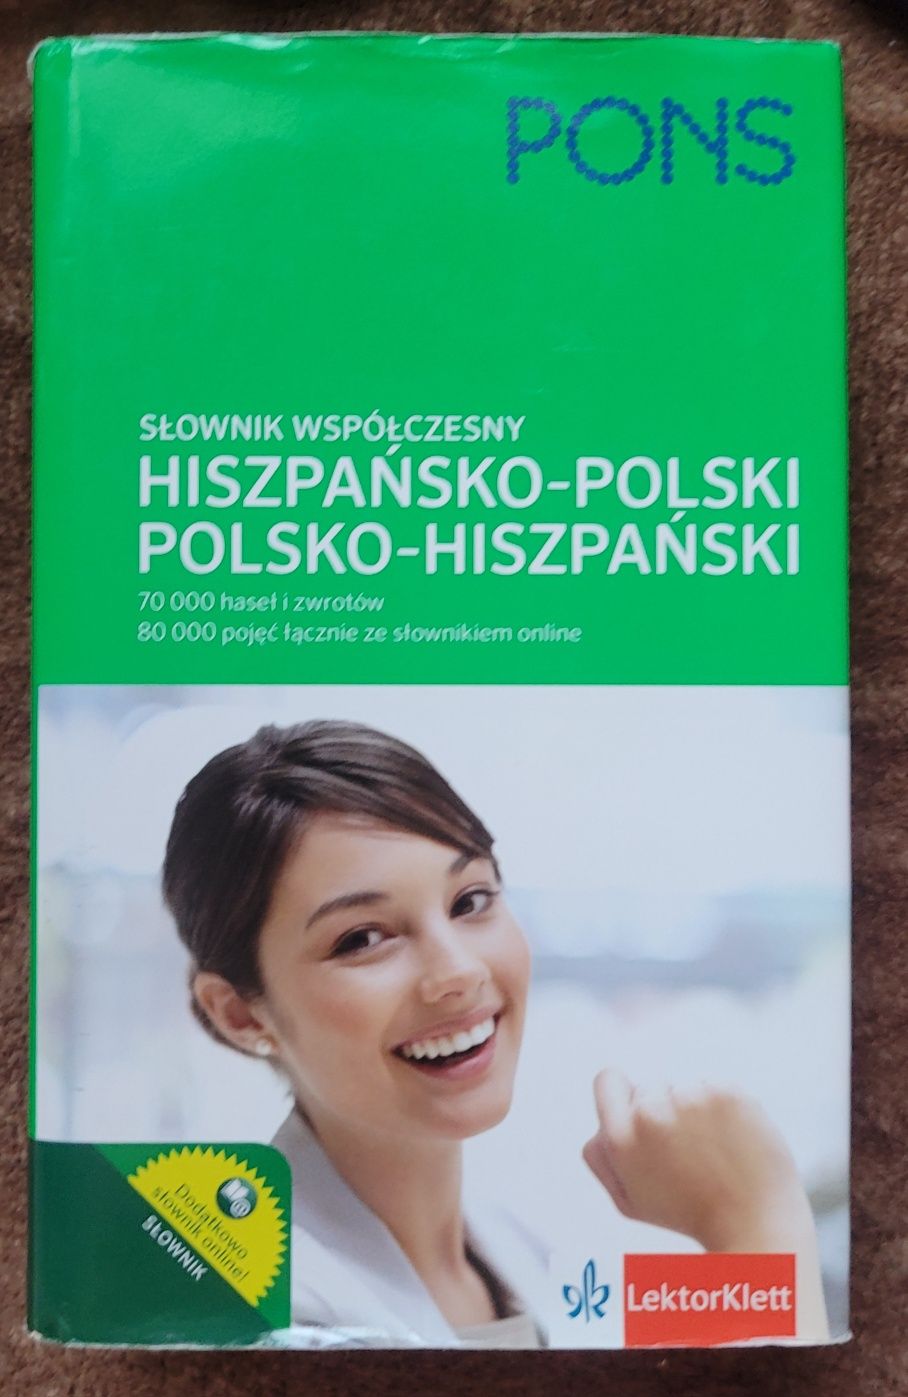 Słownik polsko-hiszpański PONS hiszpańsko-polski współczesny